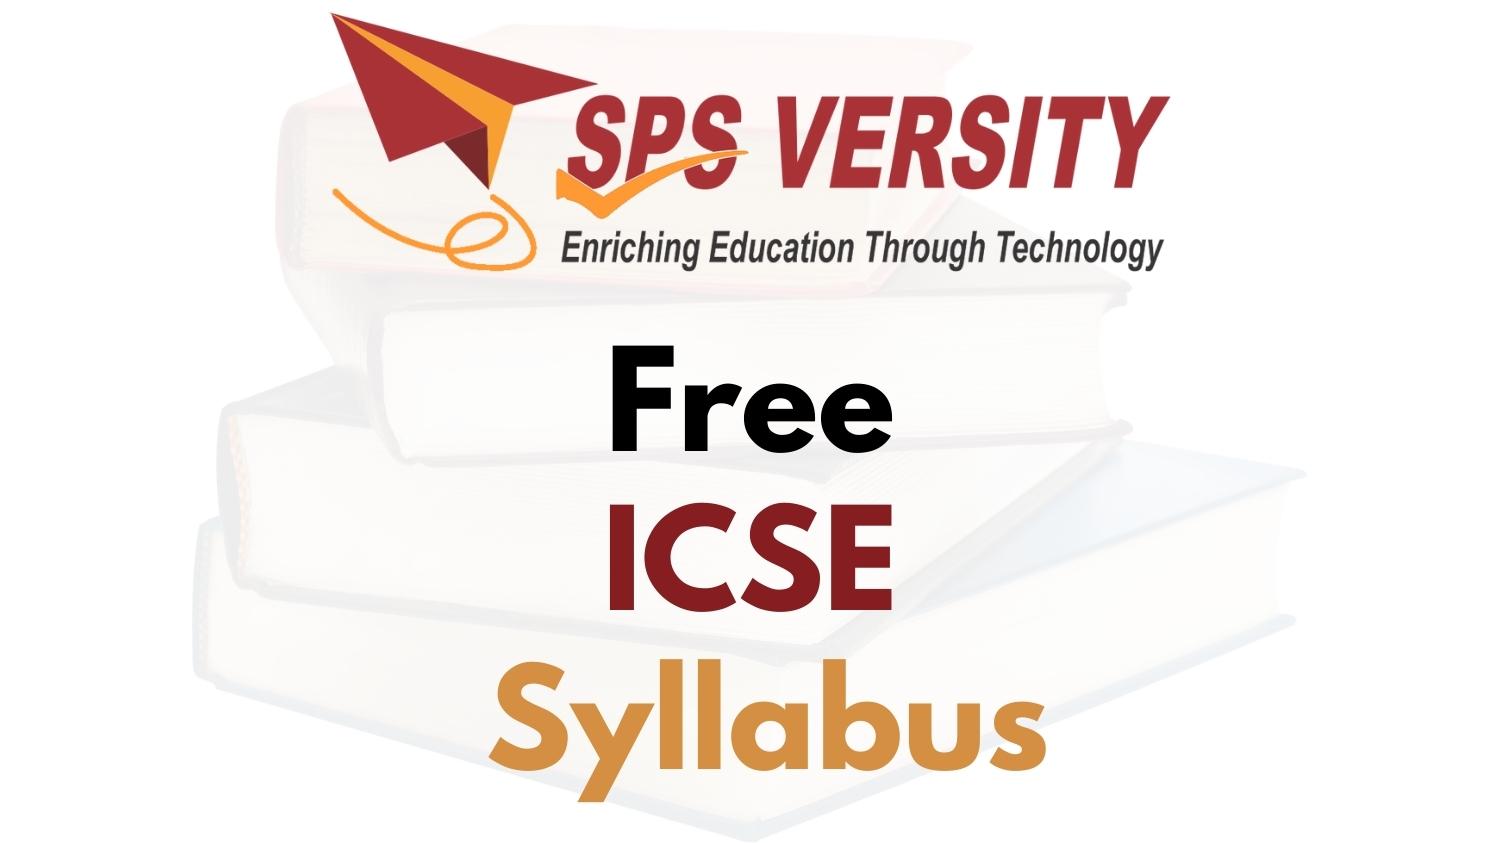 Free ICSE Syllabus